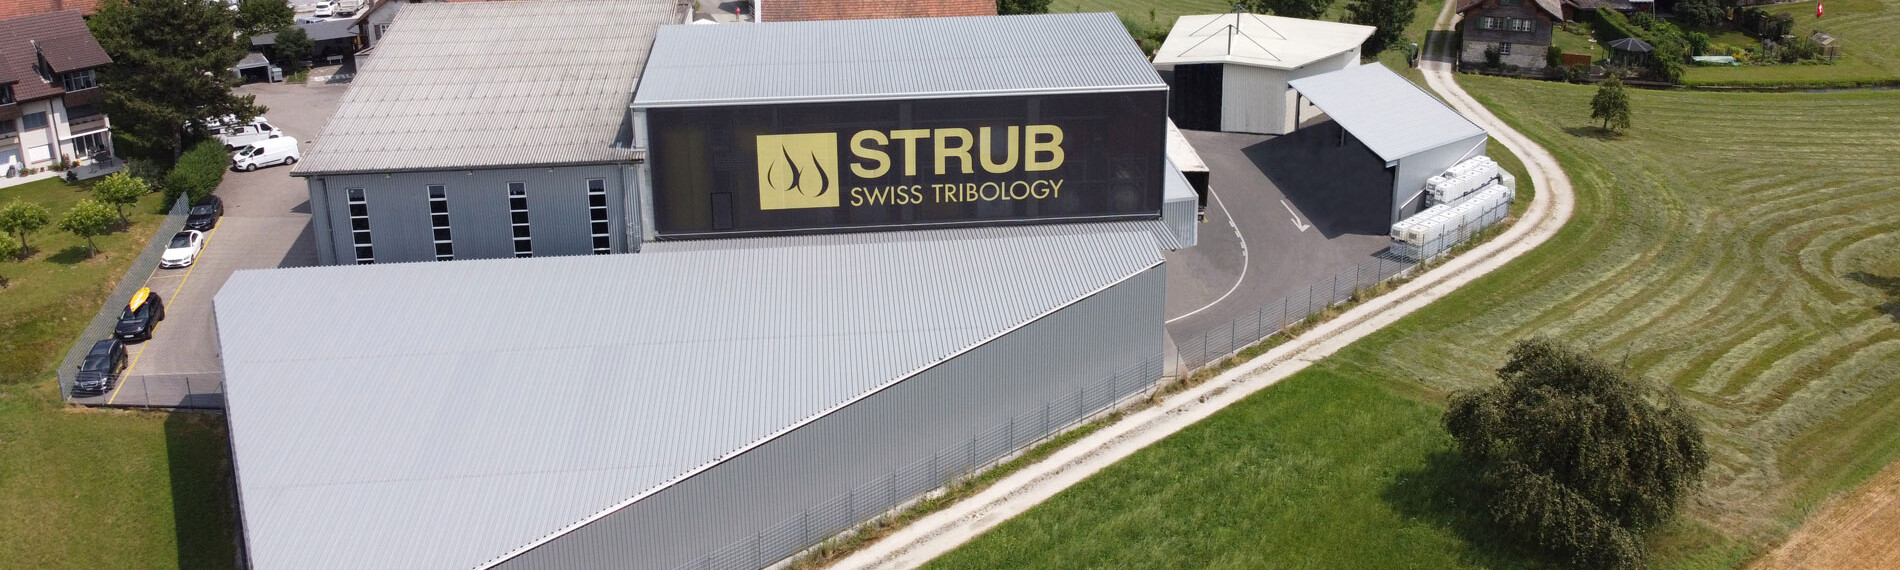 © STRUB Swiss Tribology